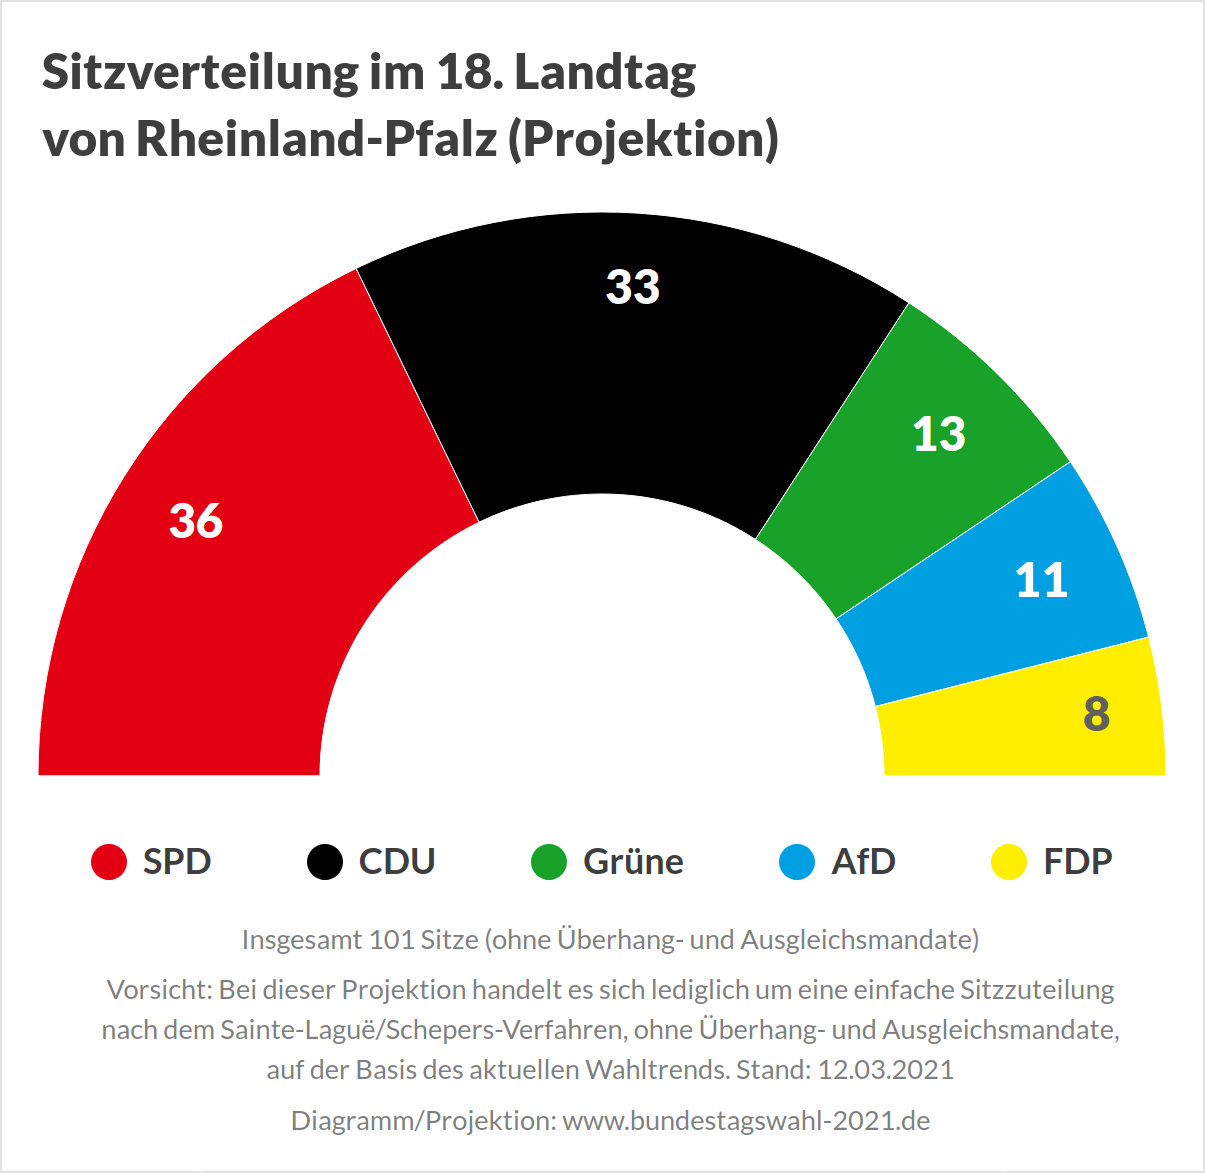 Sitzverteilung im 18. Landtag von Rheinland-Pfalz nach der Landtagswahl 2021 (Projektion)